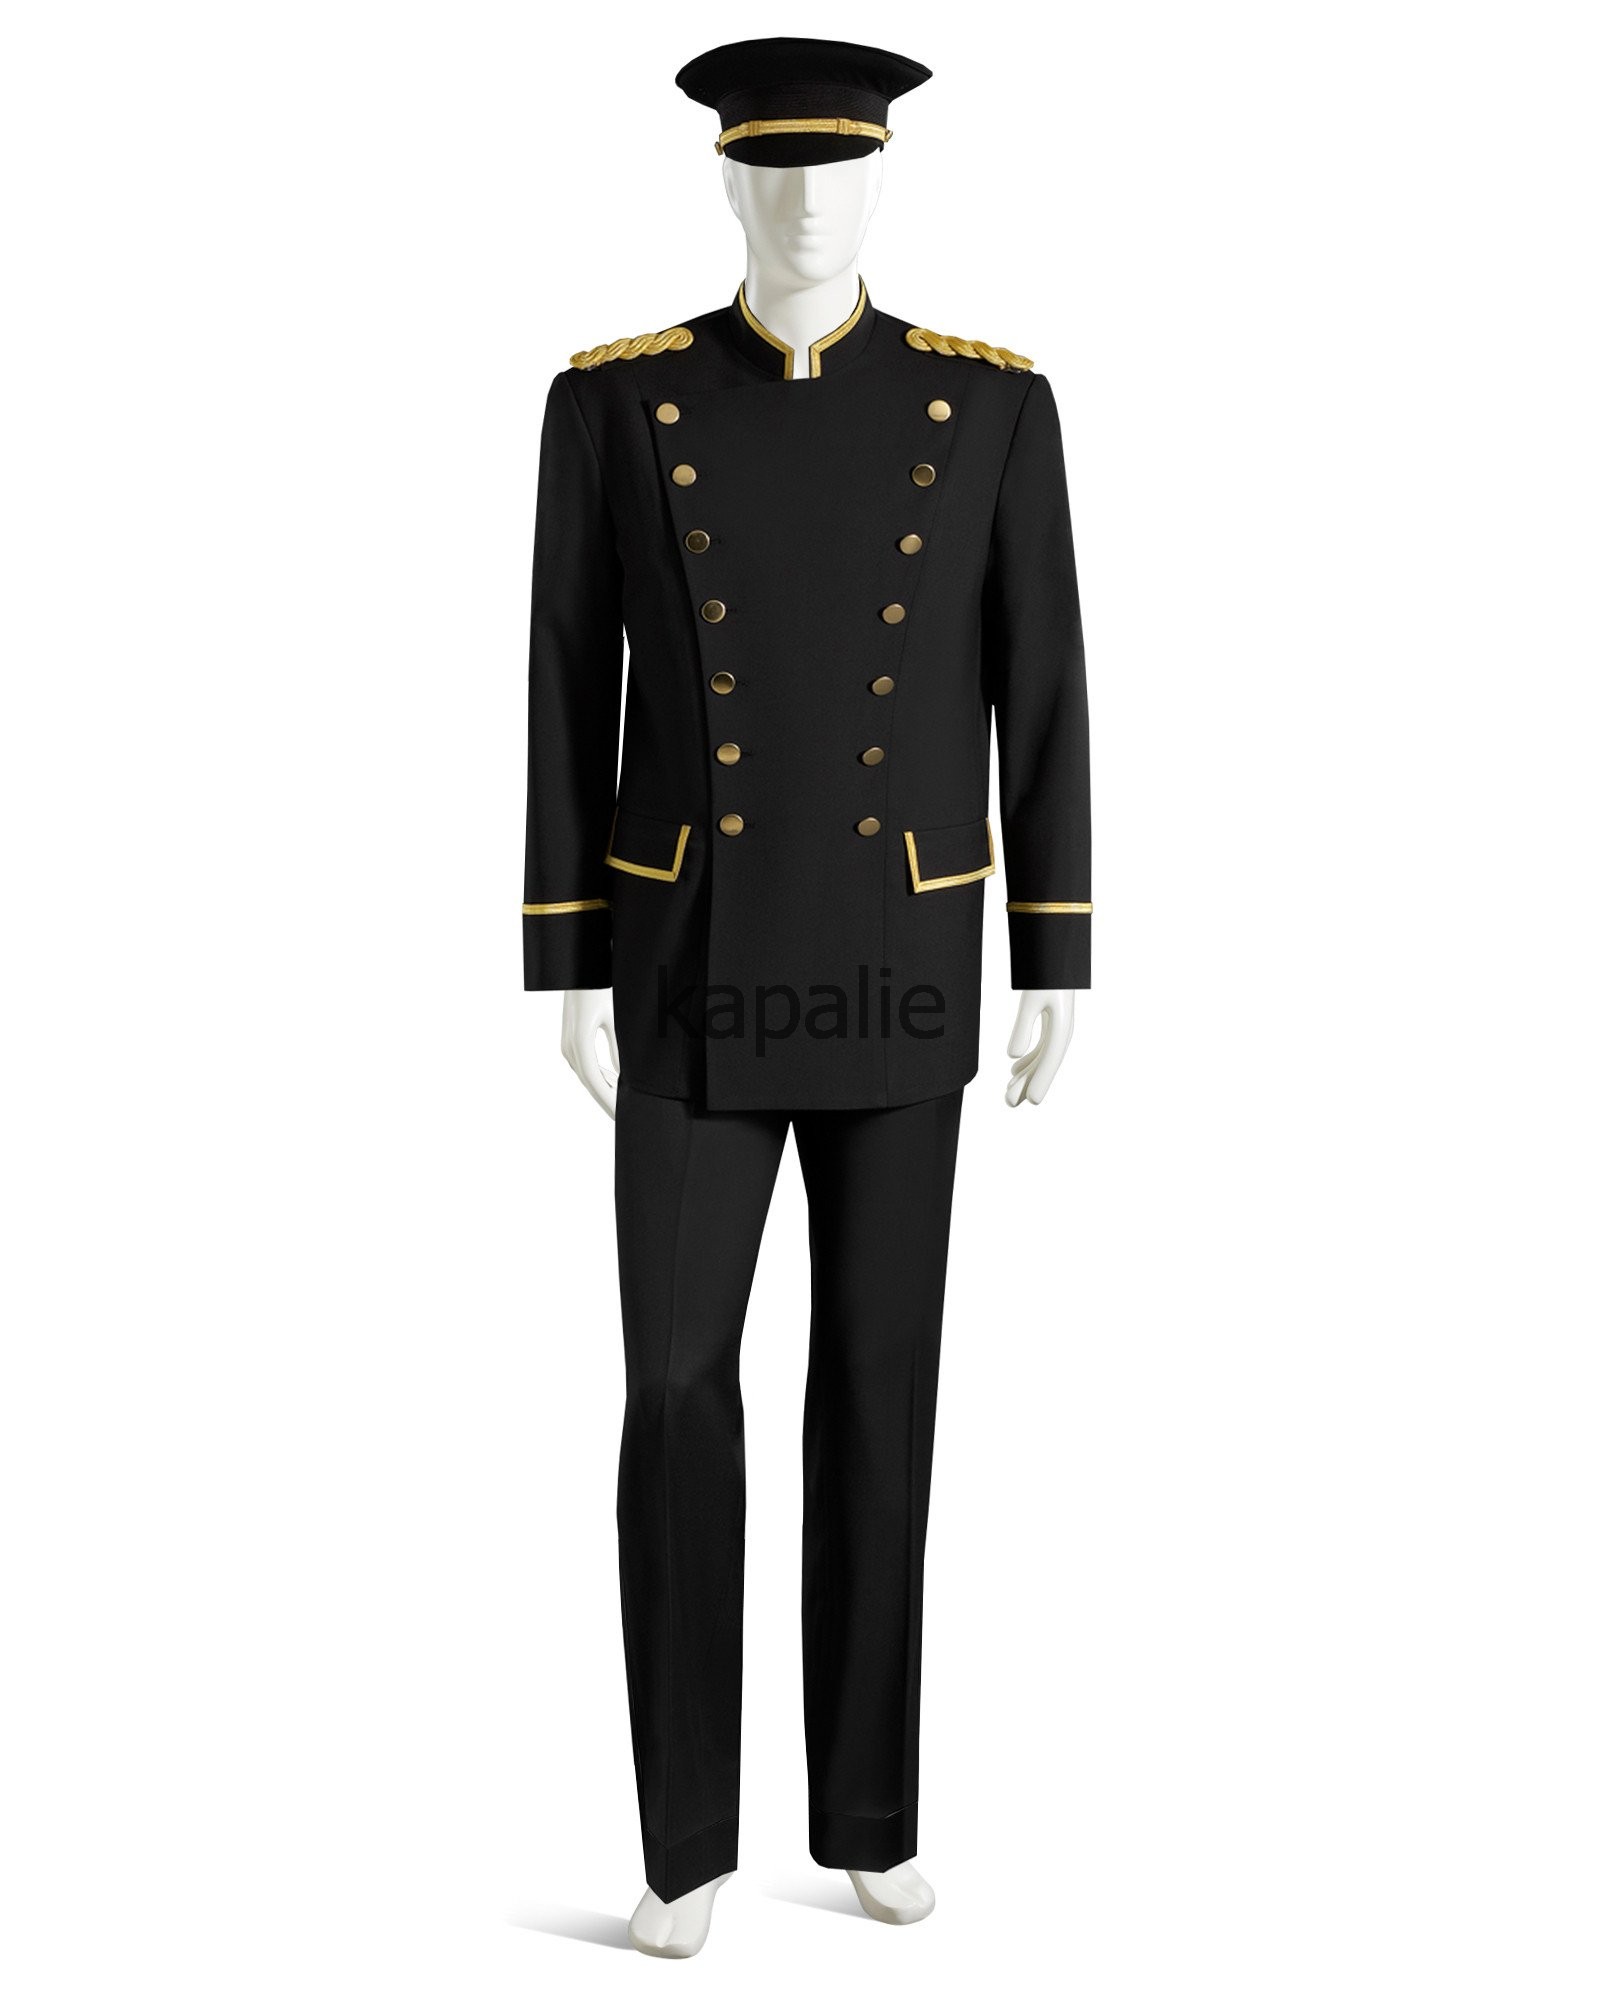 Doorman Uniforms 1